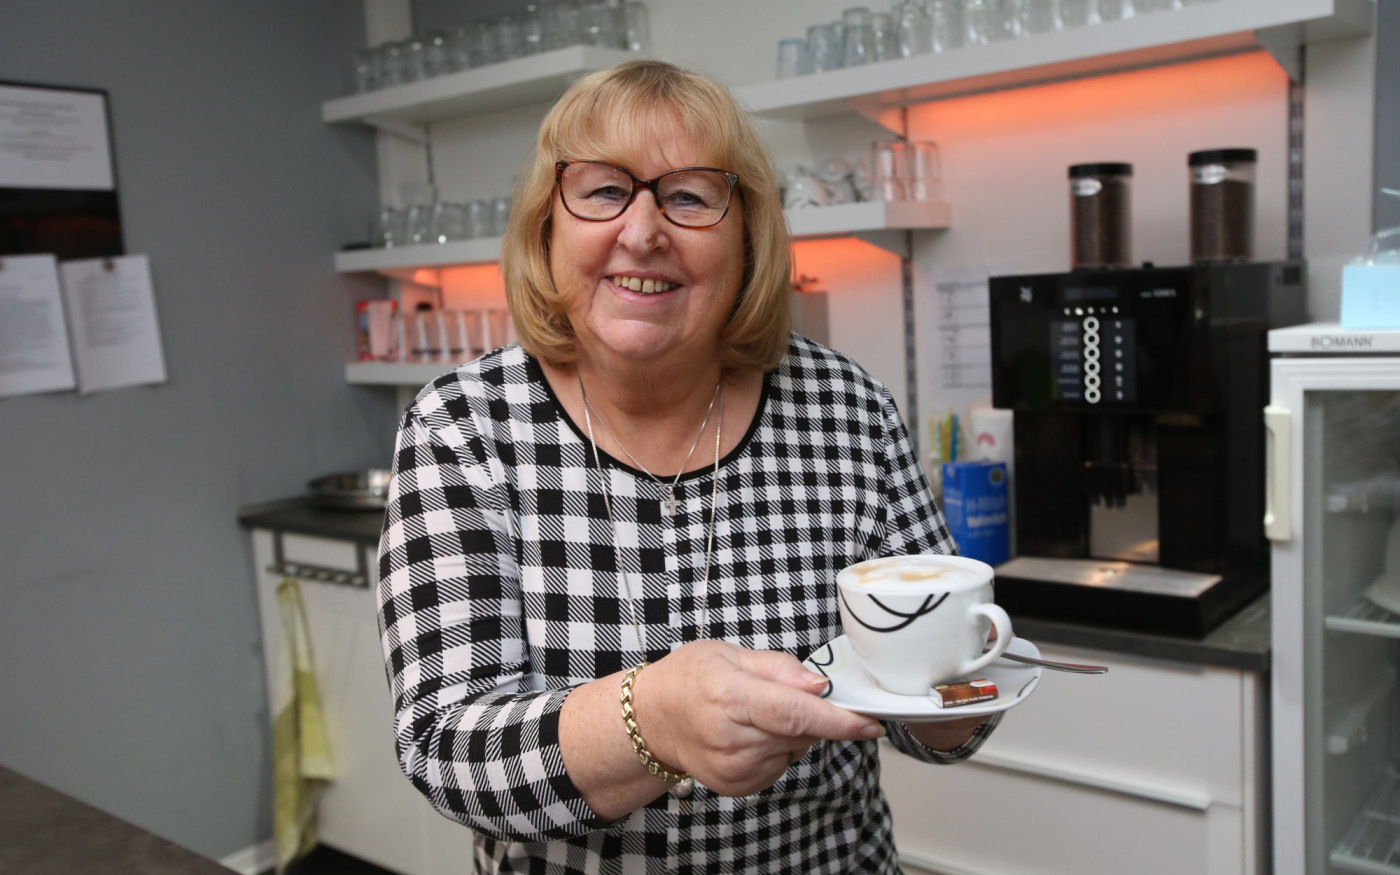 Café Aller - Etwa 40 ehrenamtliche Mitarbeiter*innen bringen Gifhorns Bürger zusammen